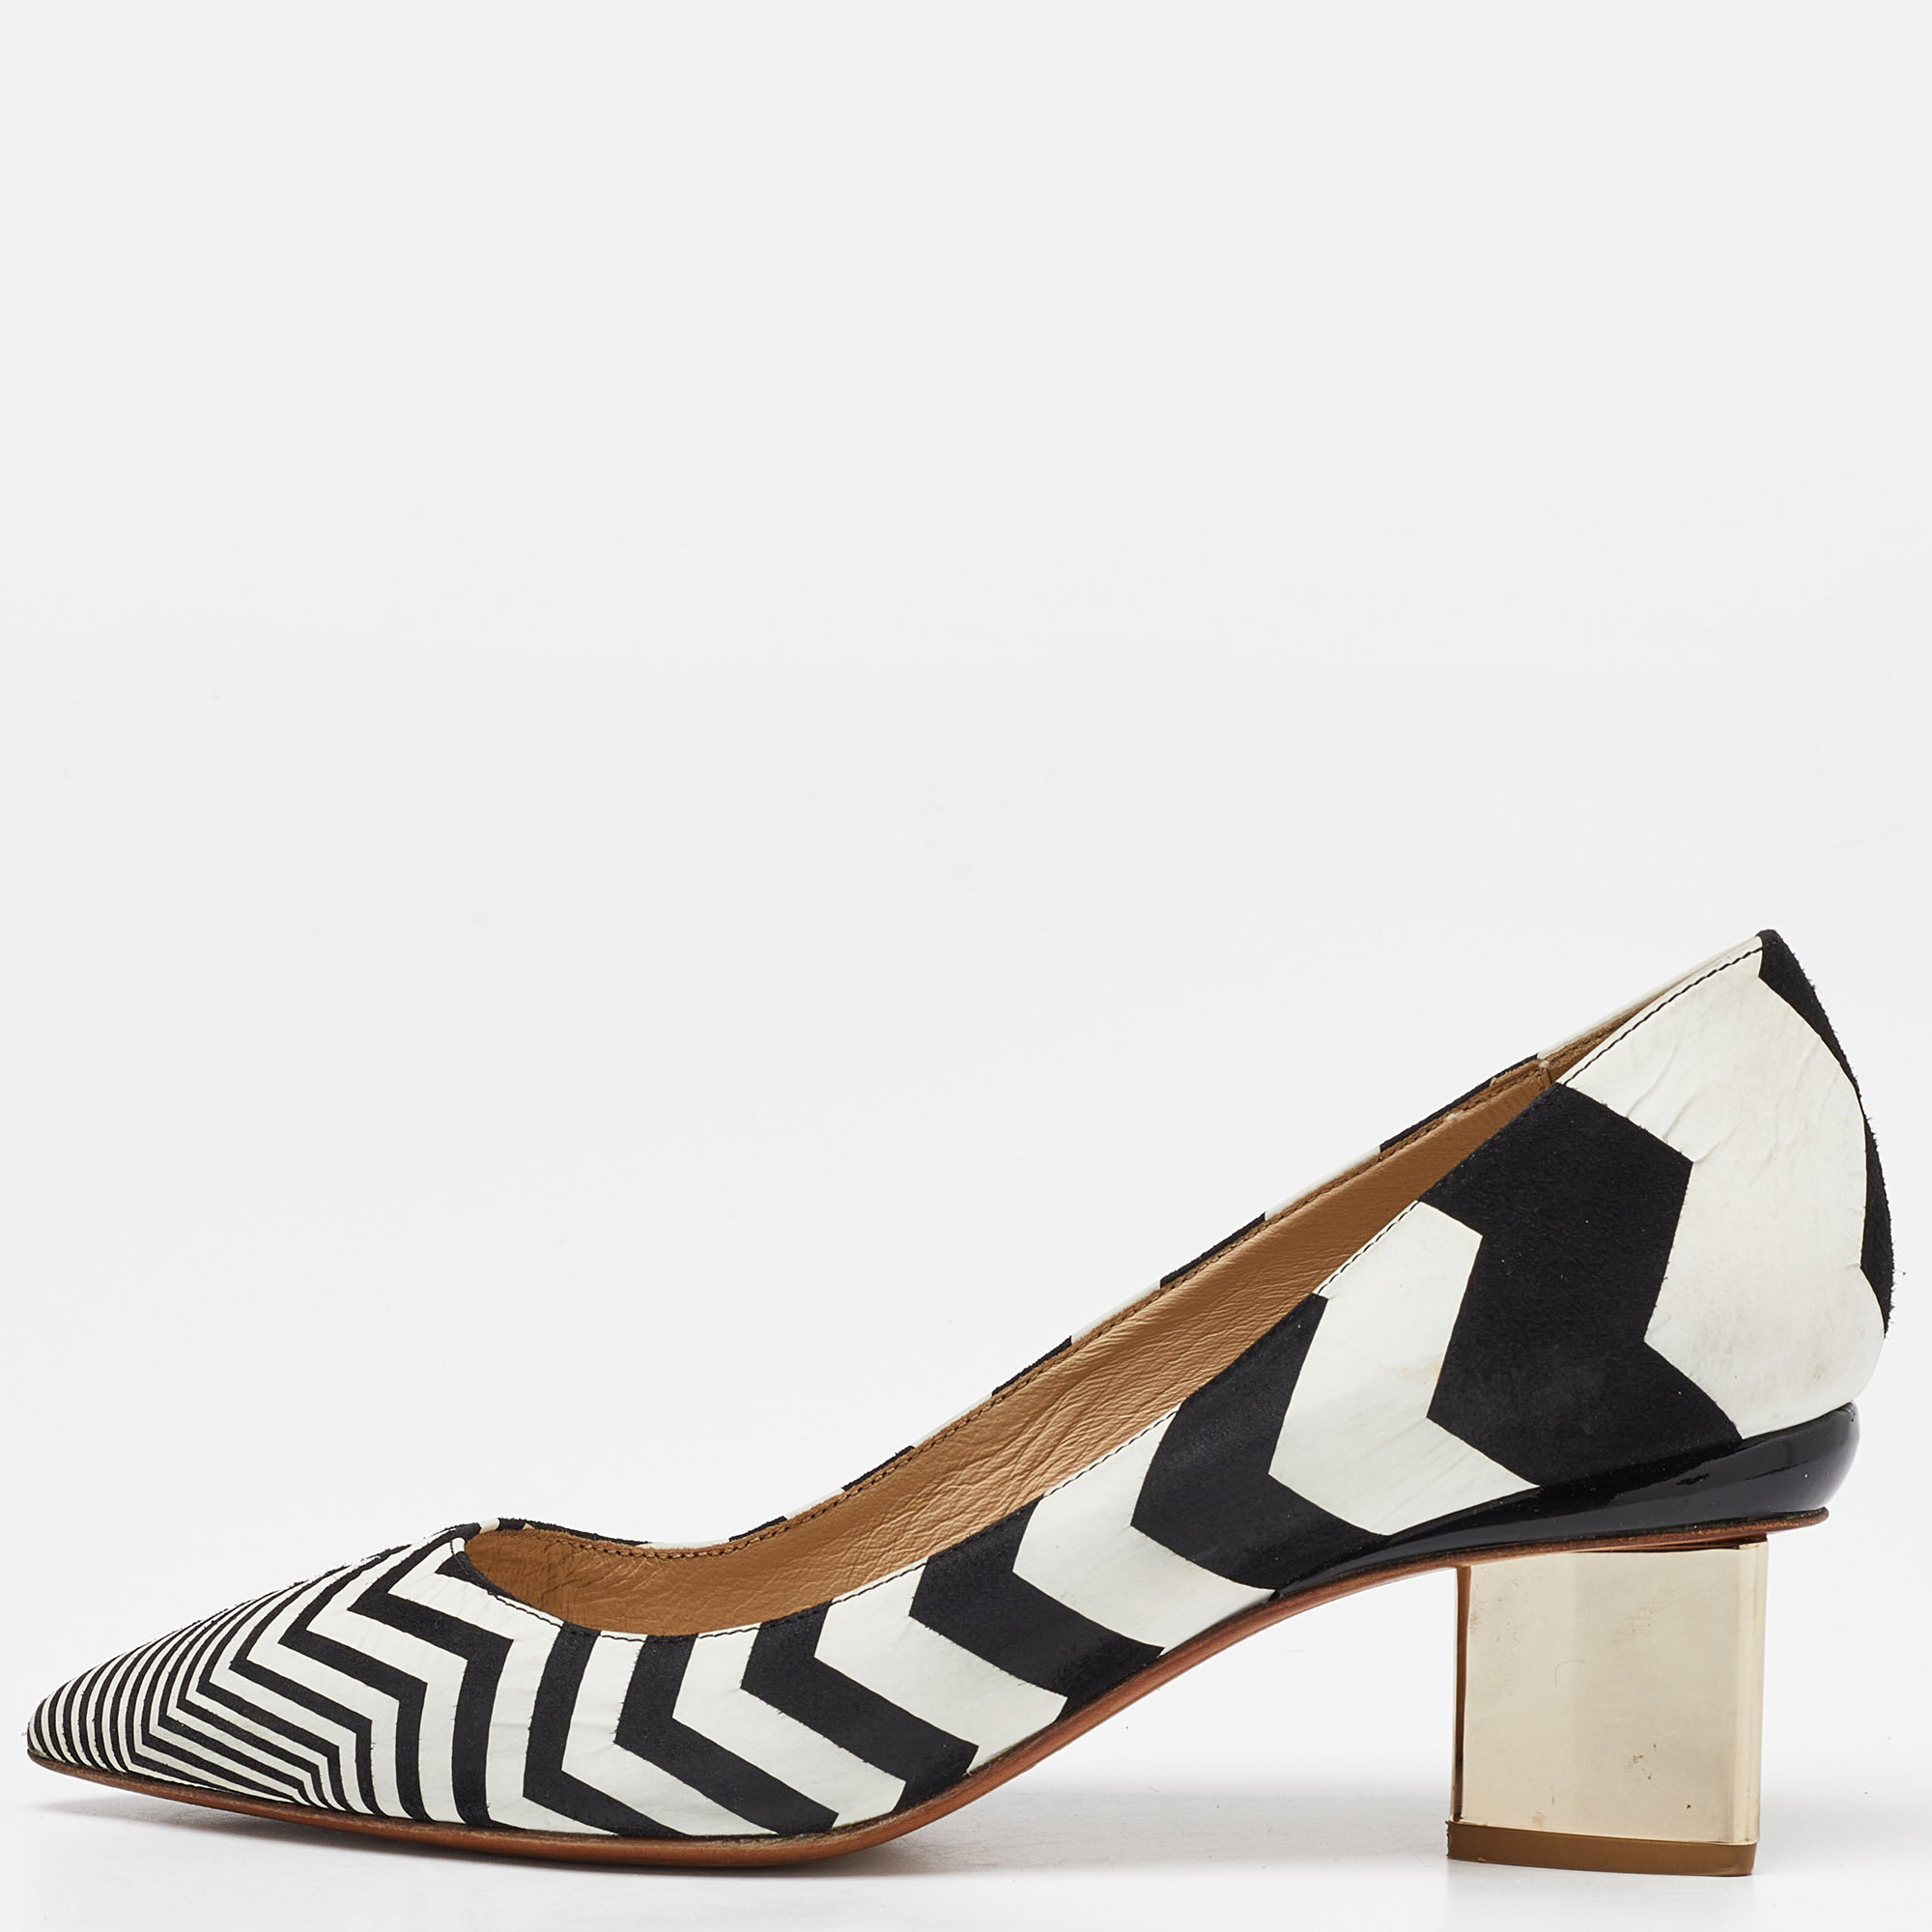 Nicholas kirkwood white/black suede pointed toe block heel pumps size 37